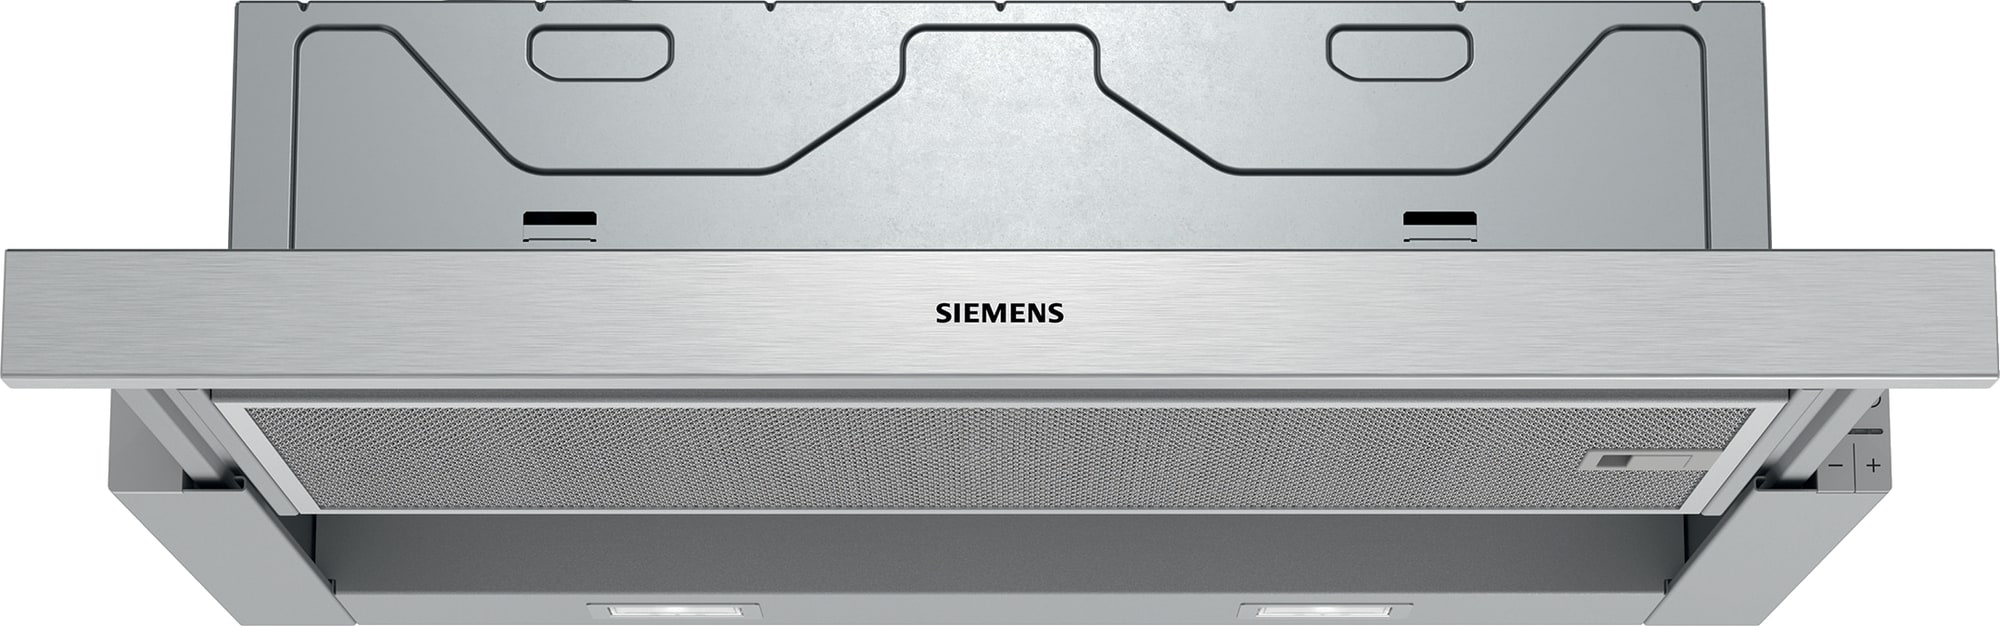 Siemens iQ300 emhætte LI64MA531